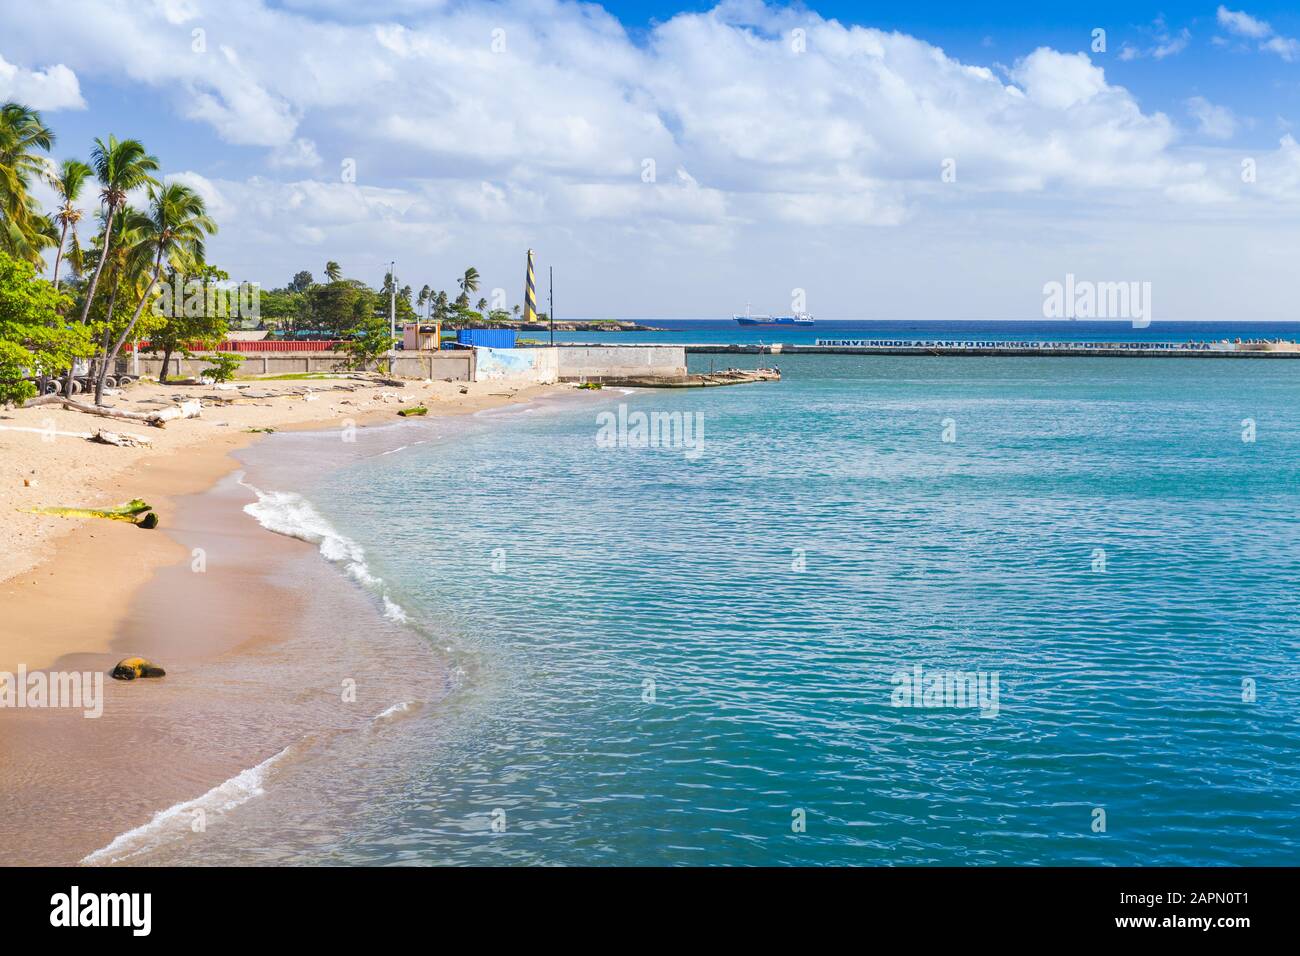 Paesaggio costiero di Santo Domingo. La capitale della Repubblica Dominicana. Testo sul molo in inglese significa: Benvenuti al Porto di Santo Domingo Foto Stock